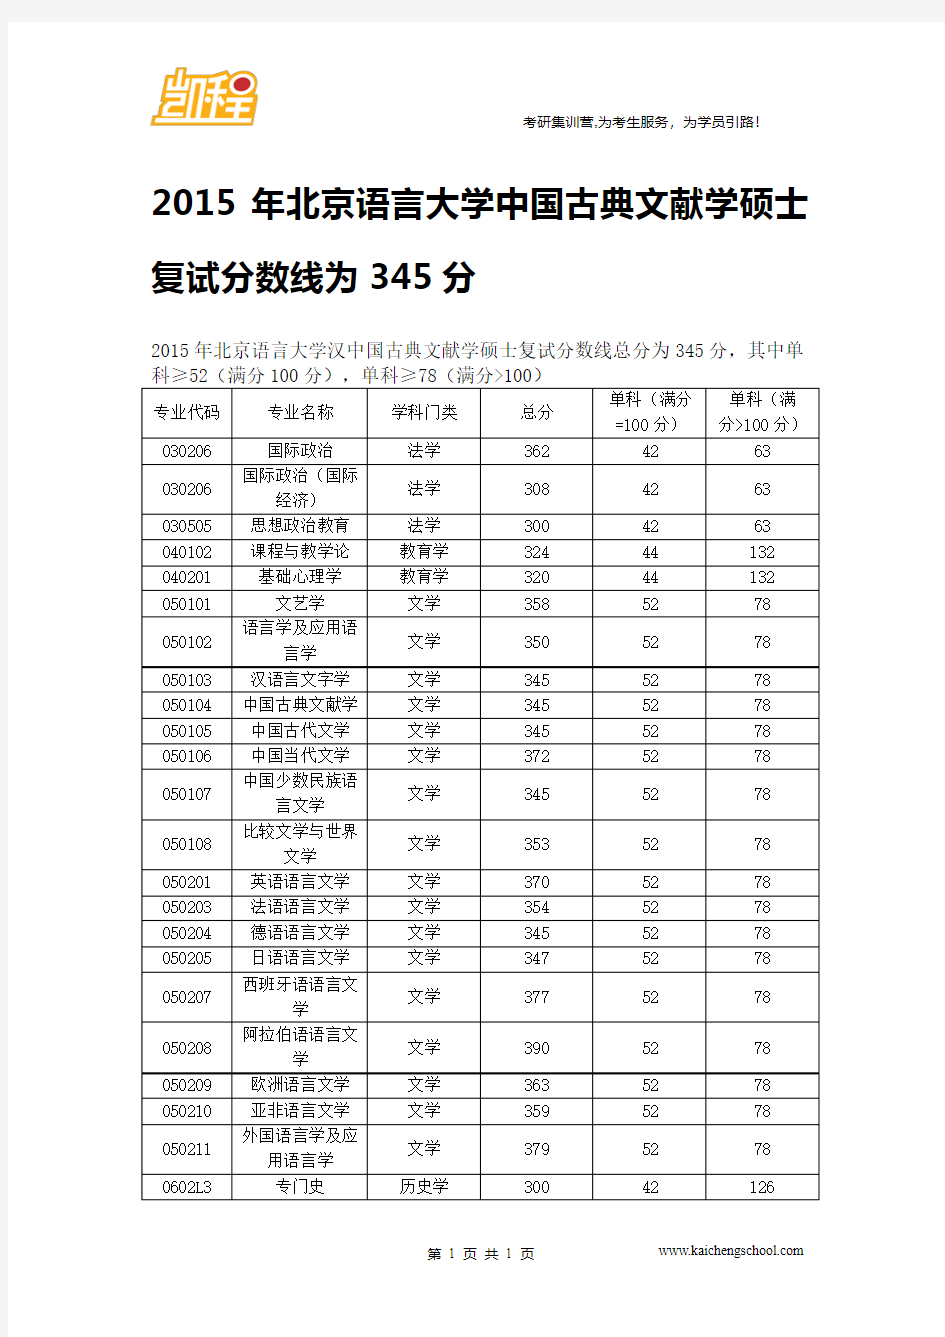 2015年北京语言大学中国古典文献学硕士复试分数线为345分